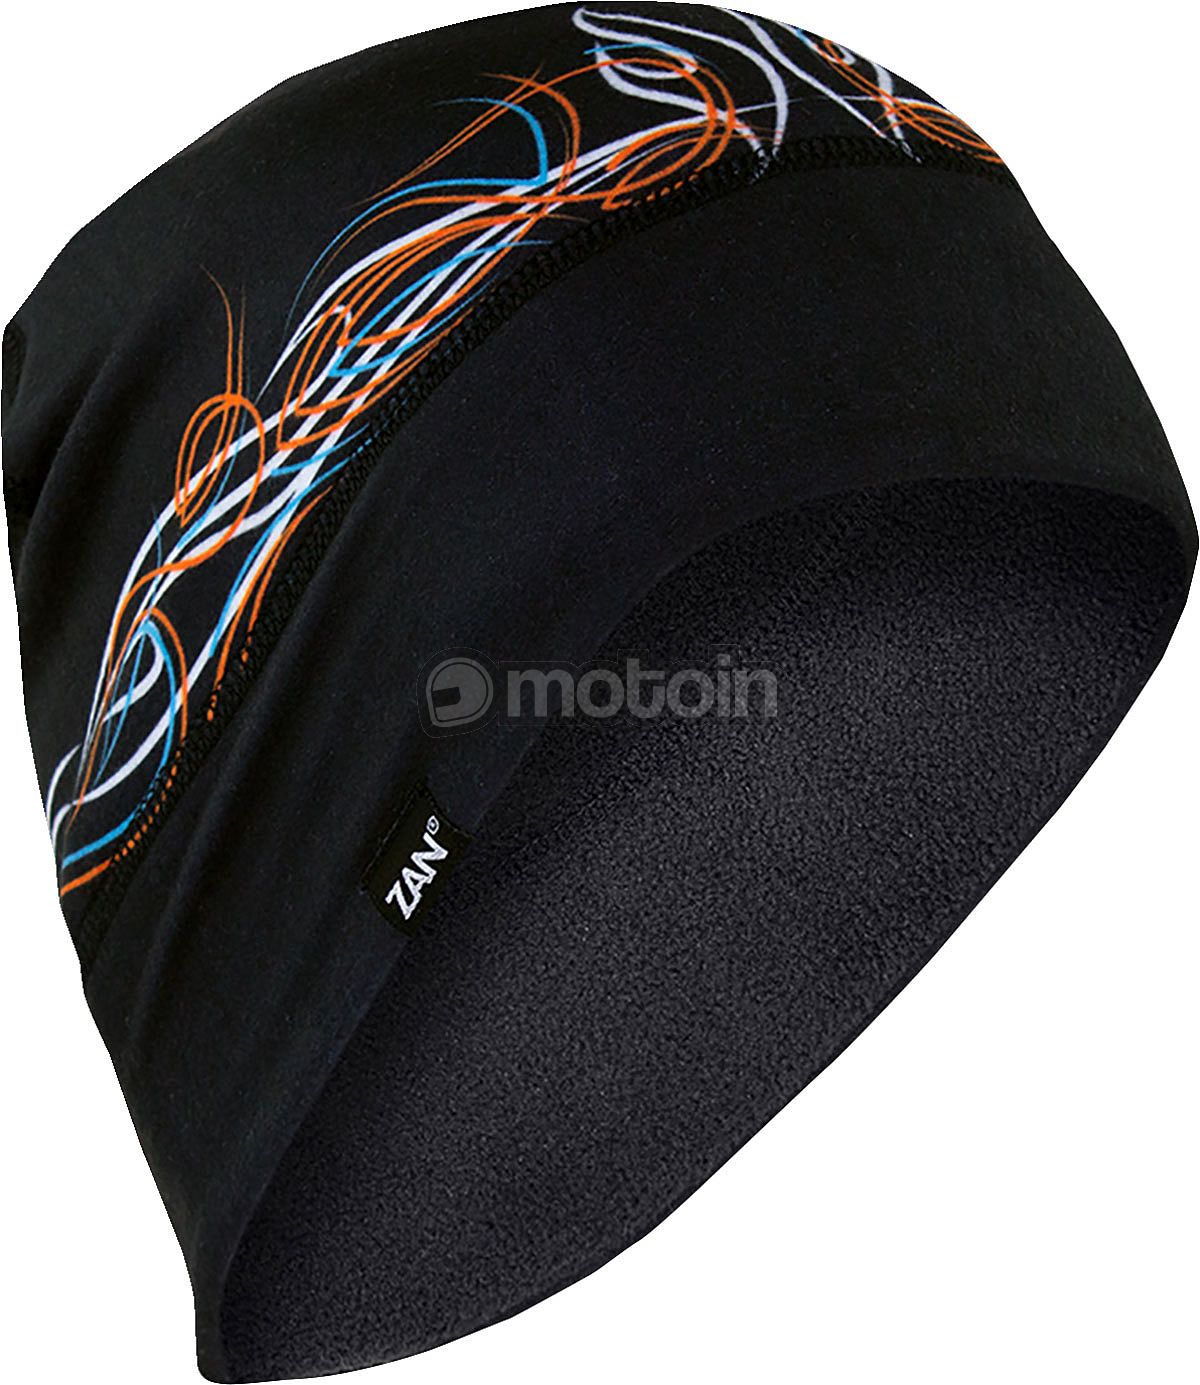 Zan Headgear SF Fleece Pinstripe Flame, kask czapka